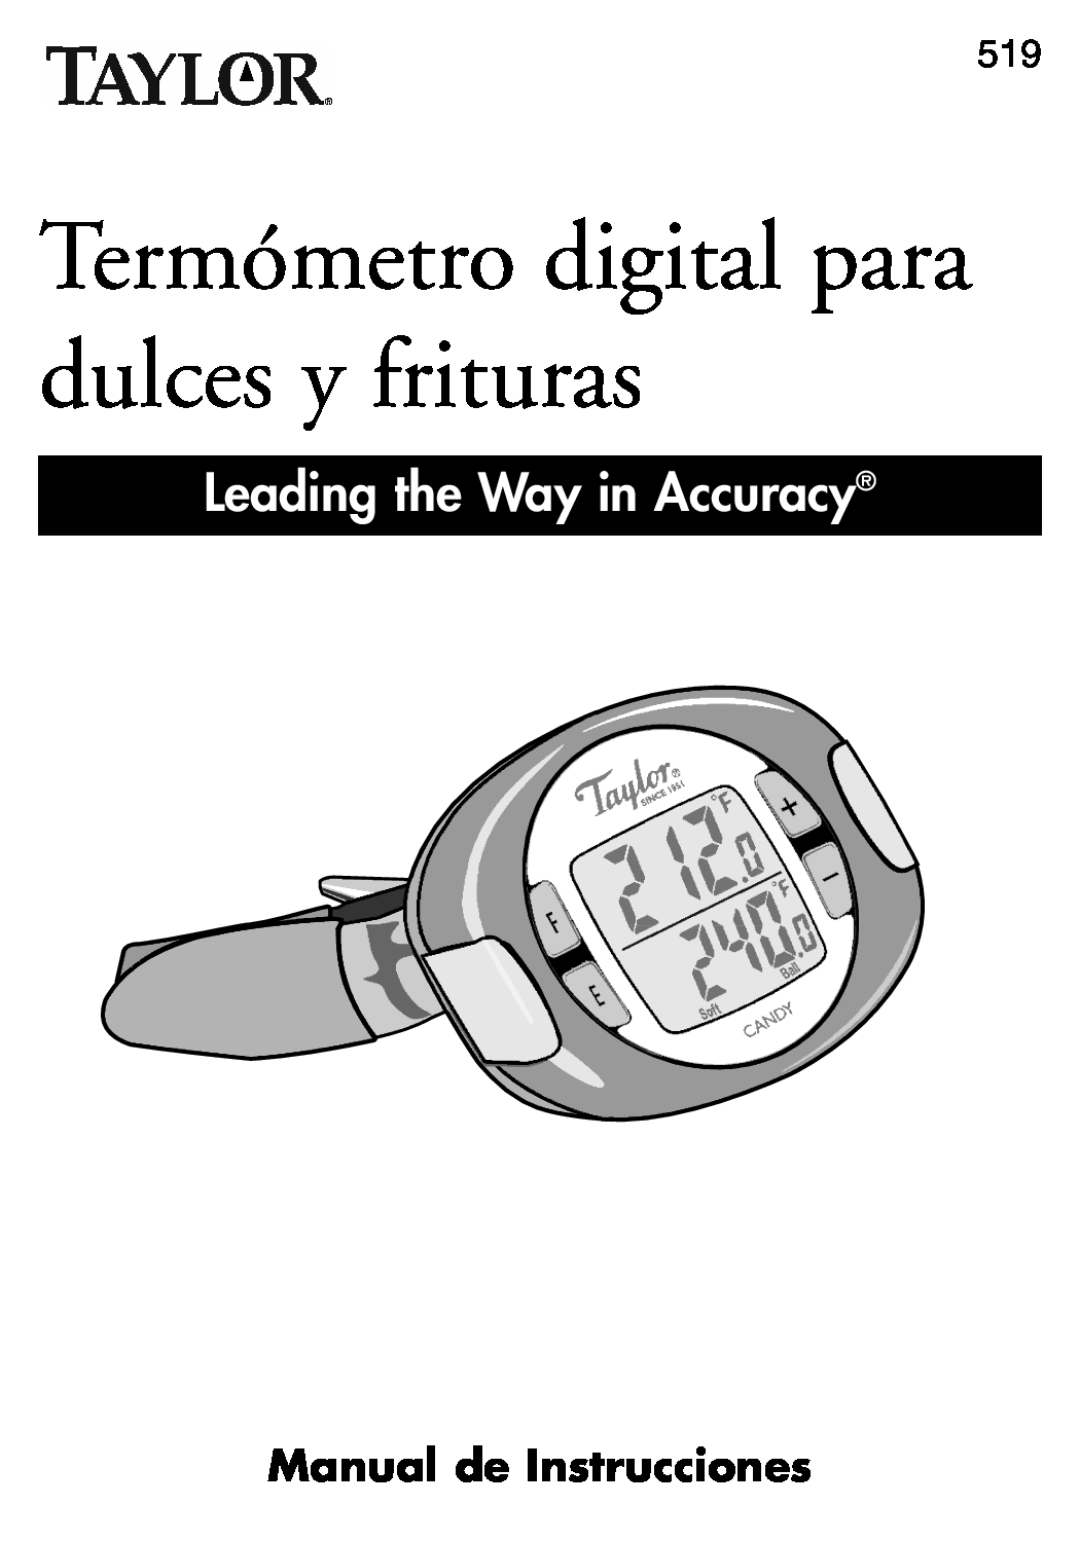 Taylor 519 Manual de Instrucciones, Termómetro digital para dulces y frituras, Leading the Way in Accuracy 